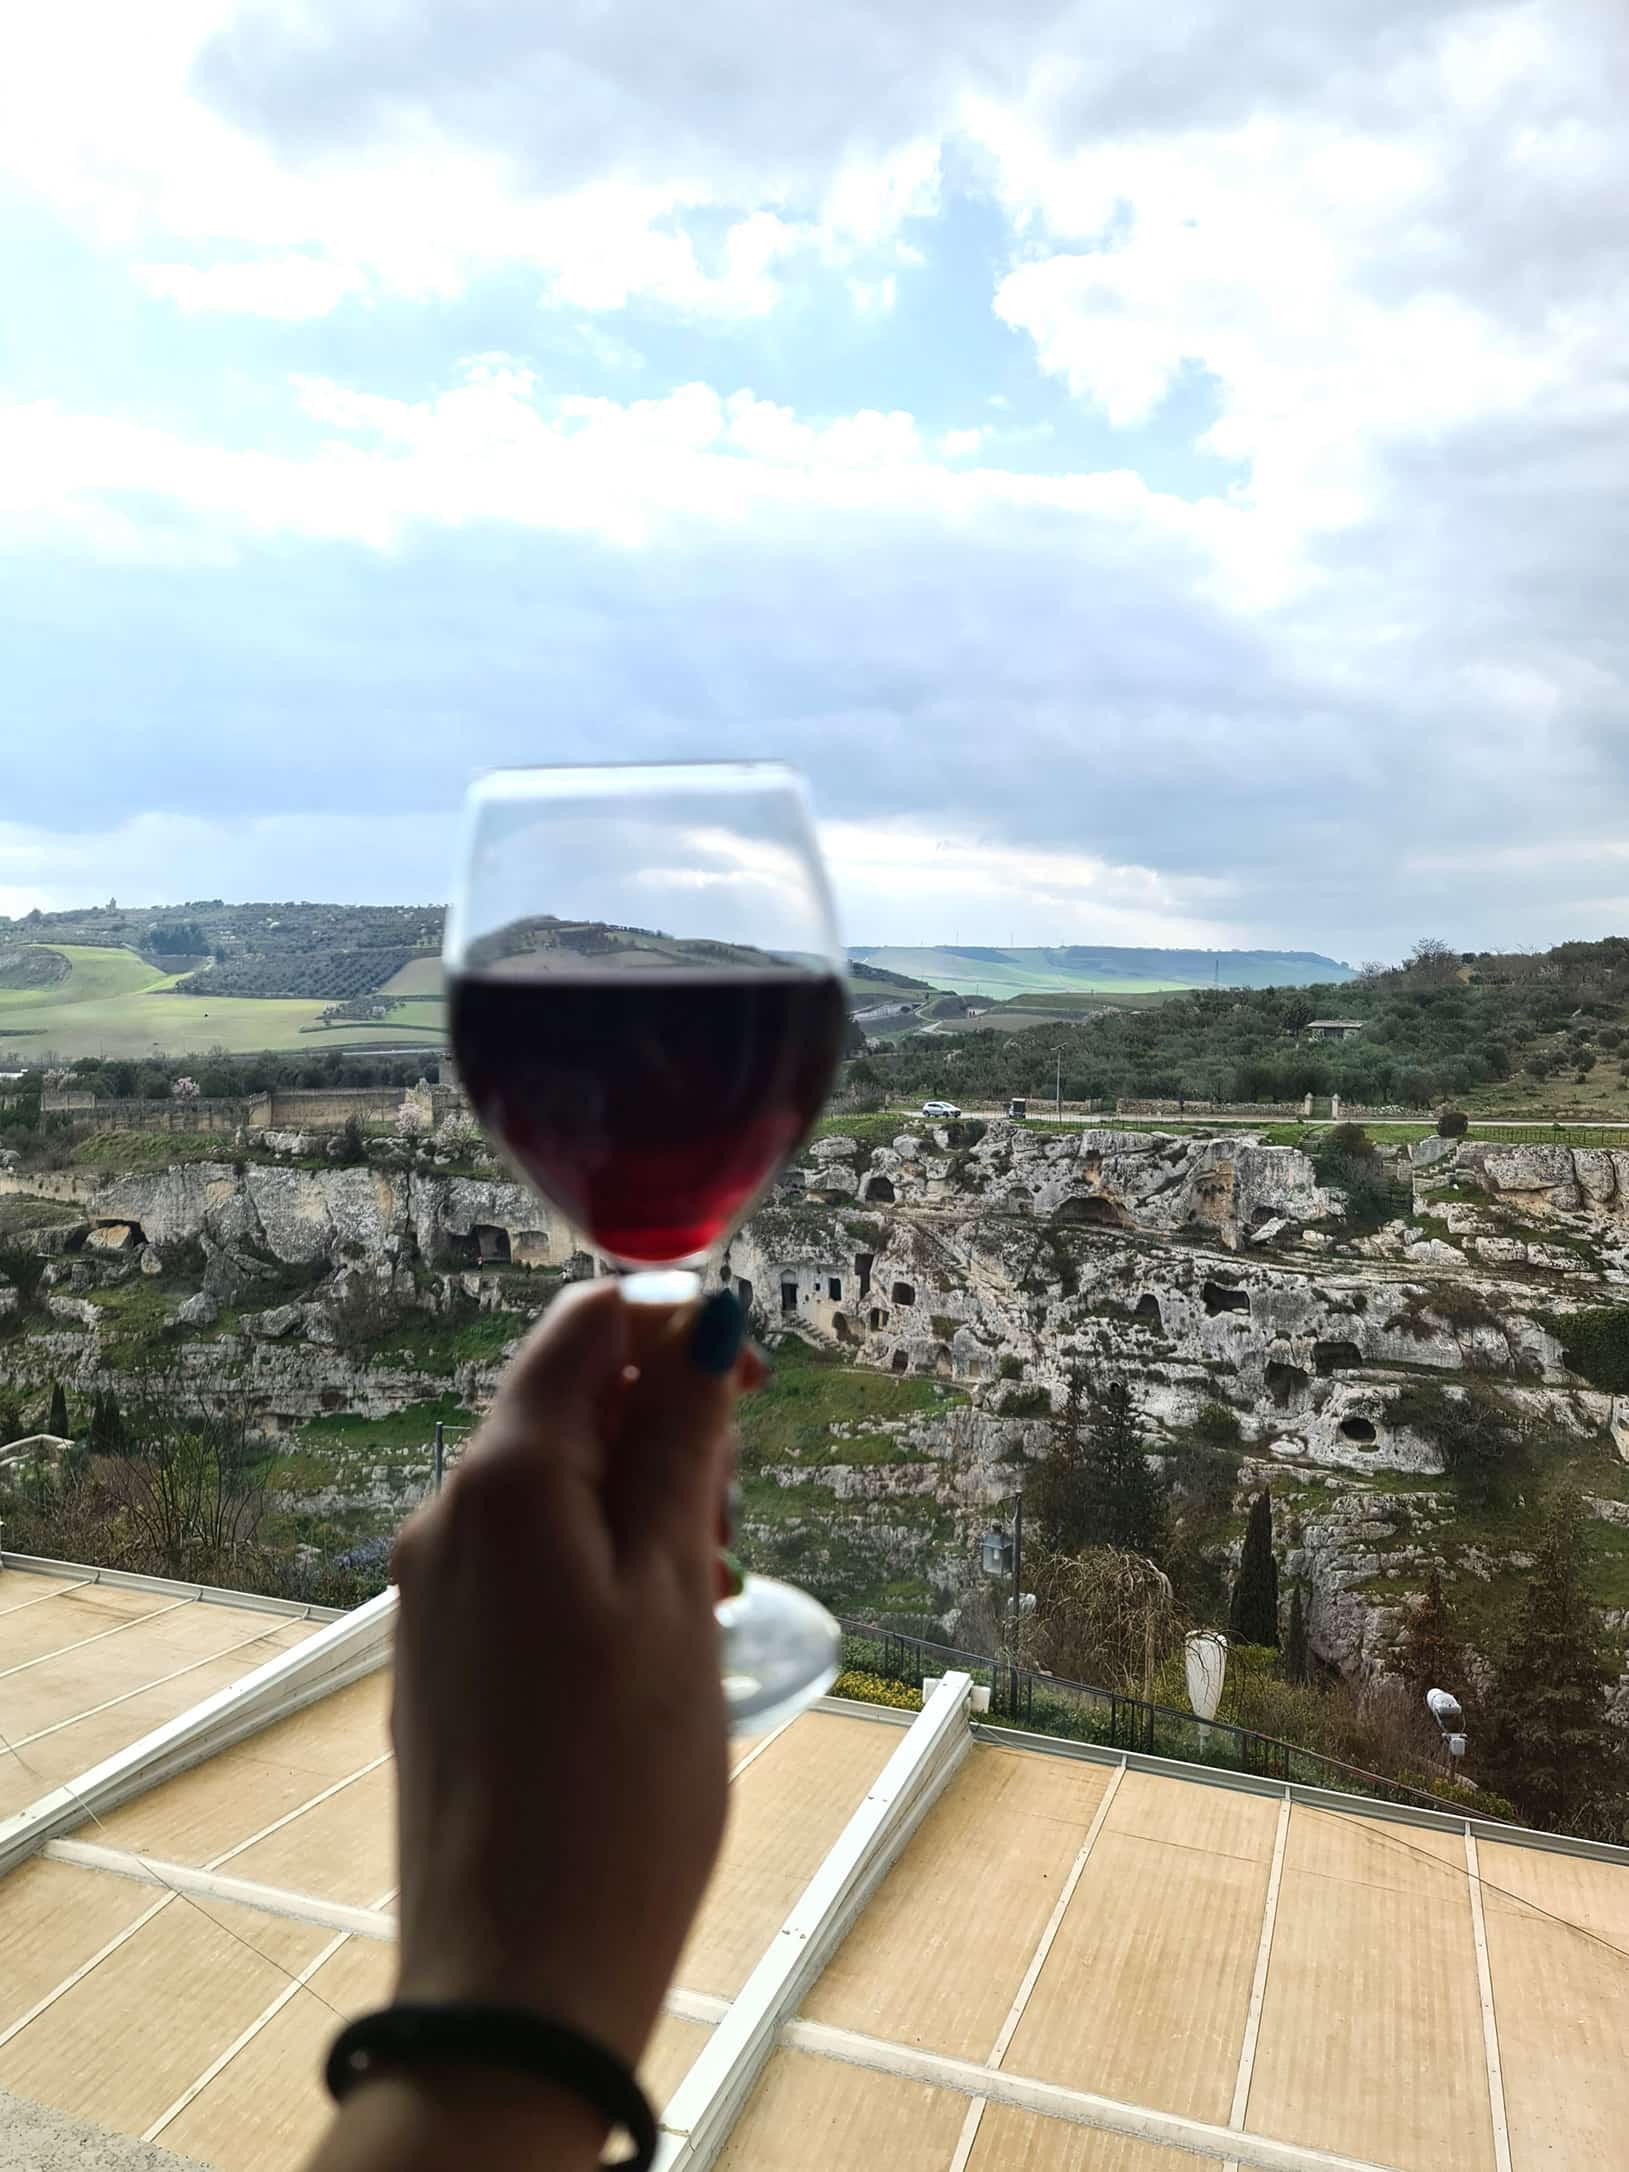 In foto si vede un bicchiere di vino rosso e il bellissimo panorama del complesso delle sette camere